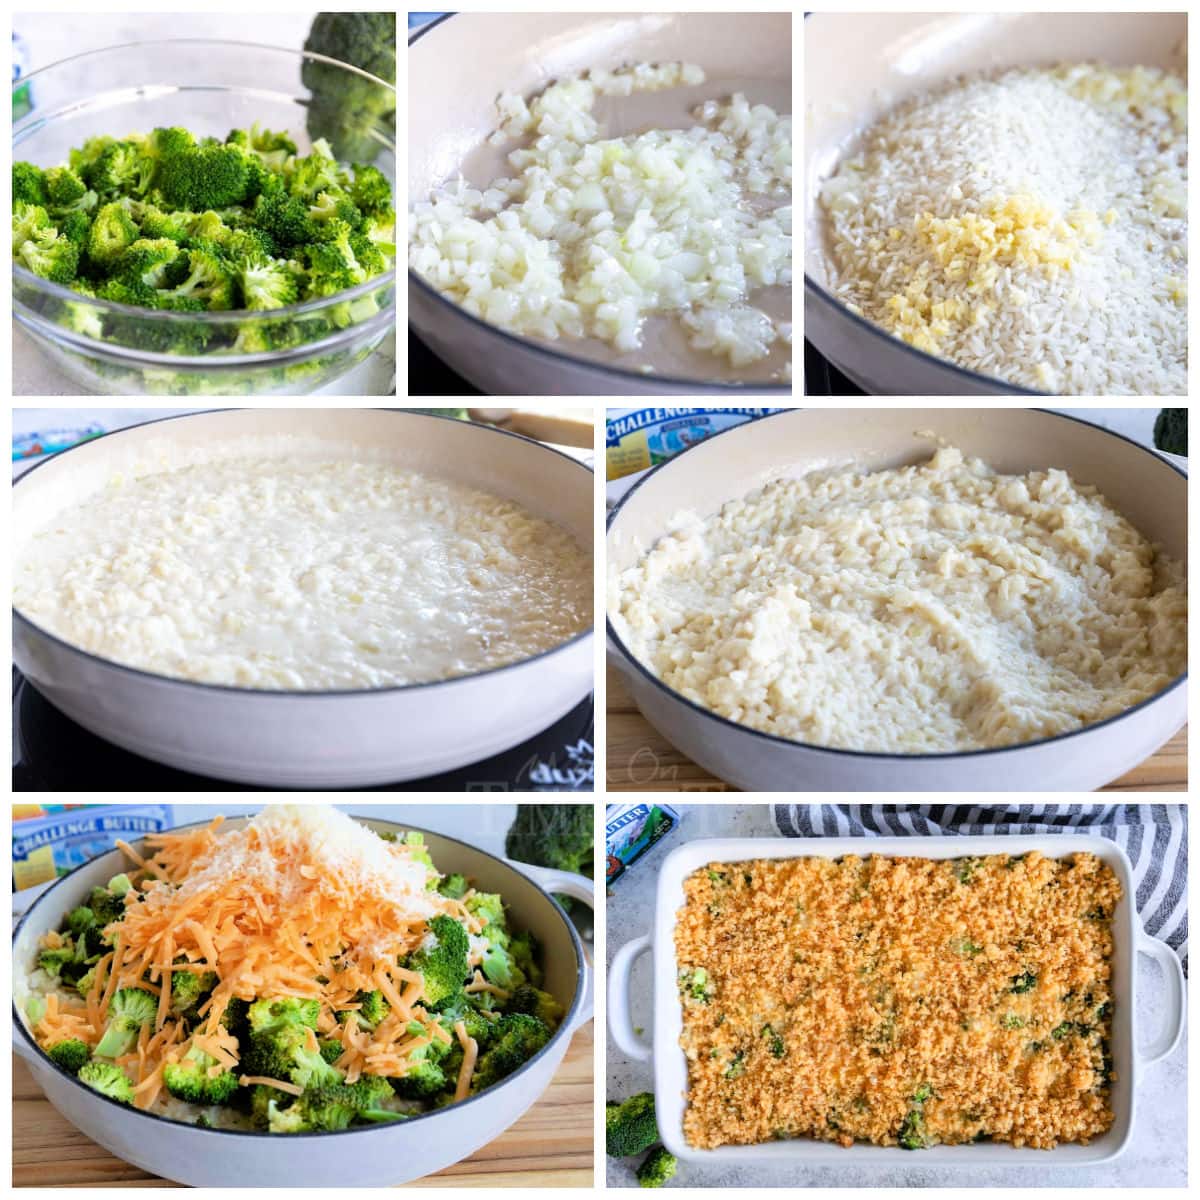 sette collage di immagini che mostrano come preparare una casseruola di riso con broccoli.